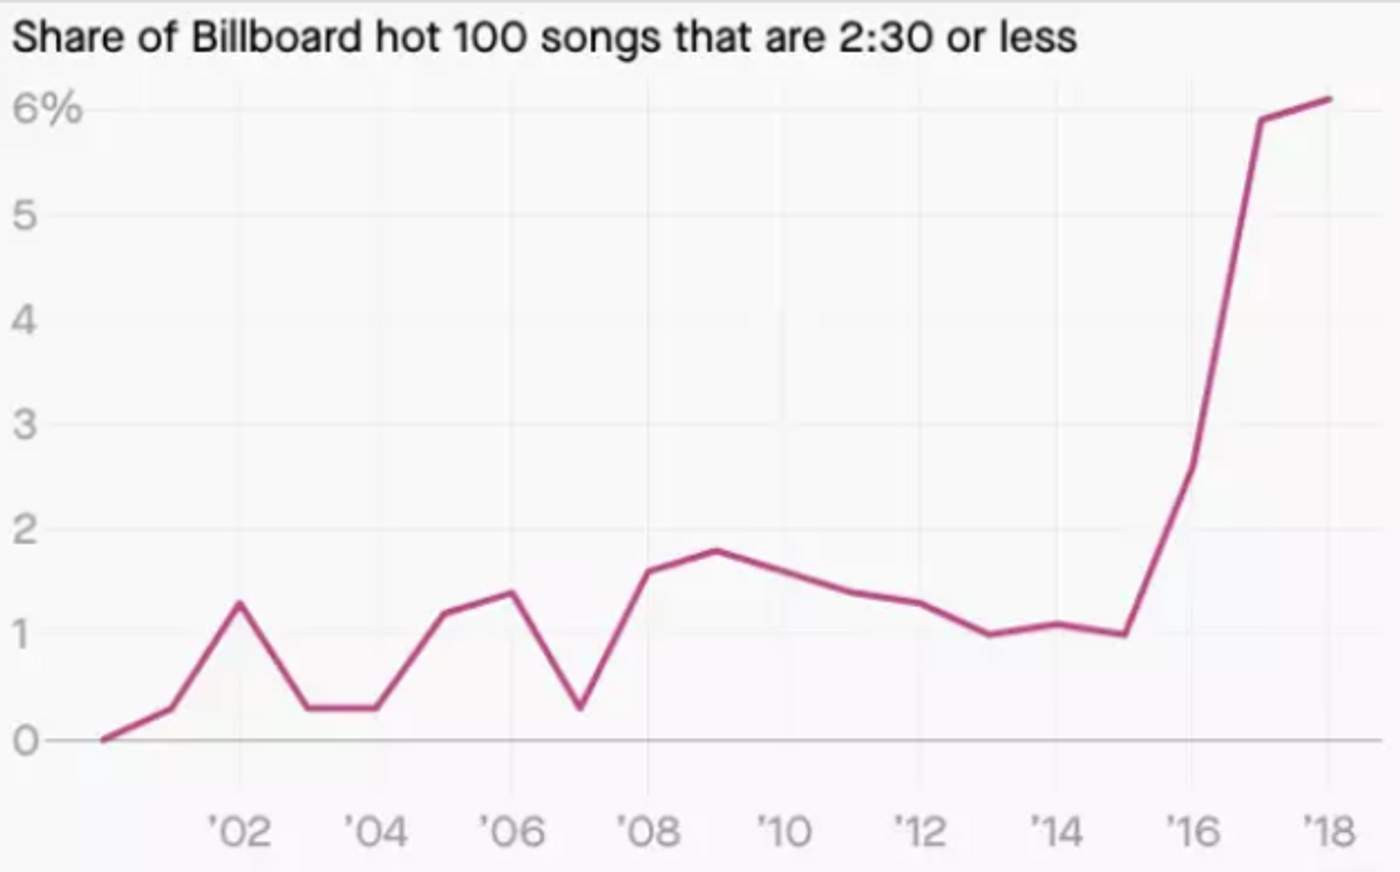 Количество песен в чарте Billboard длиной от 2:30 минут и короче.
Фото: Quartz 